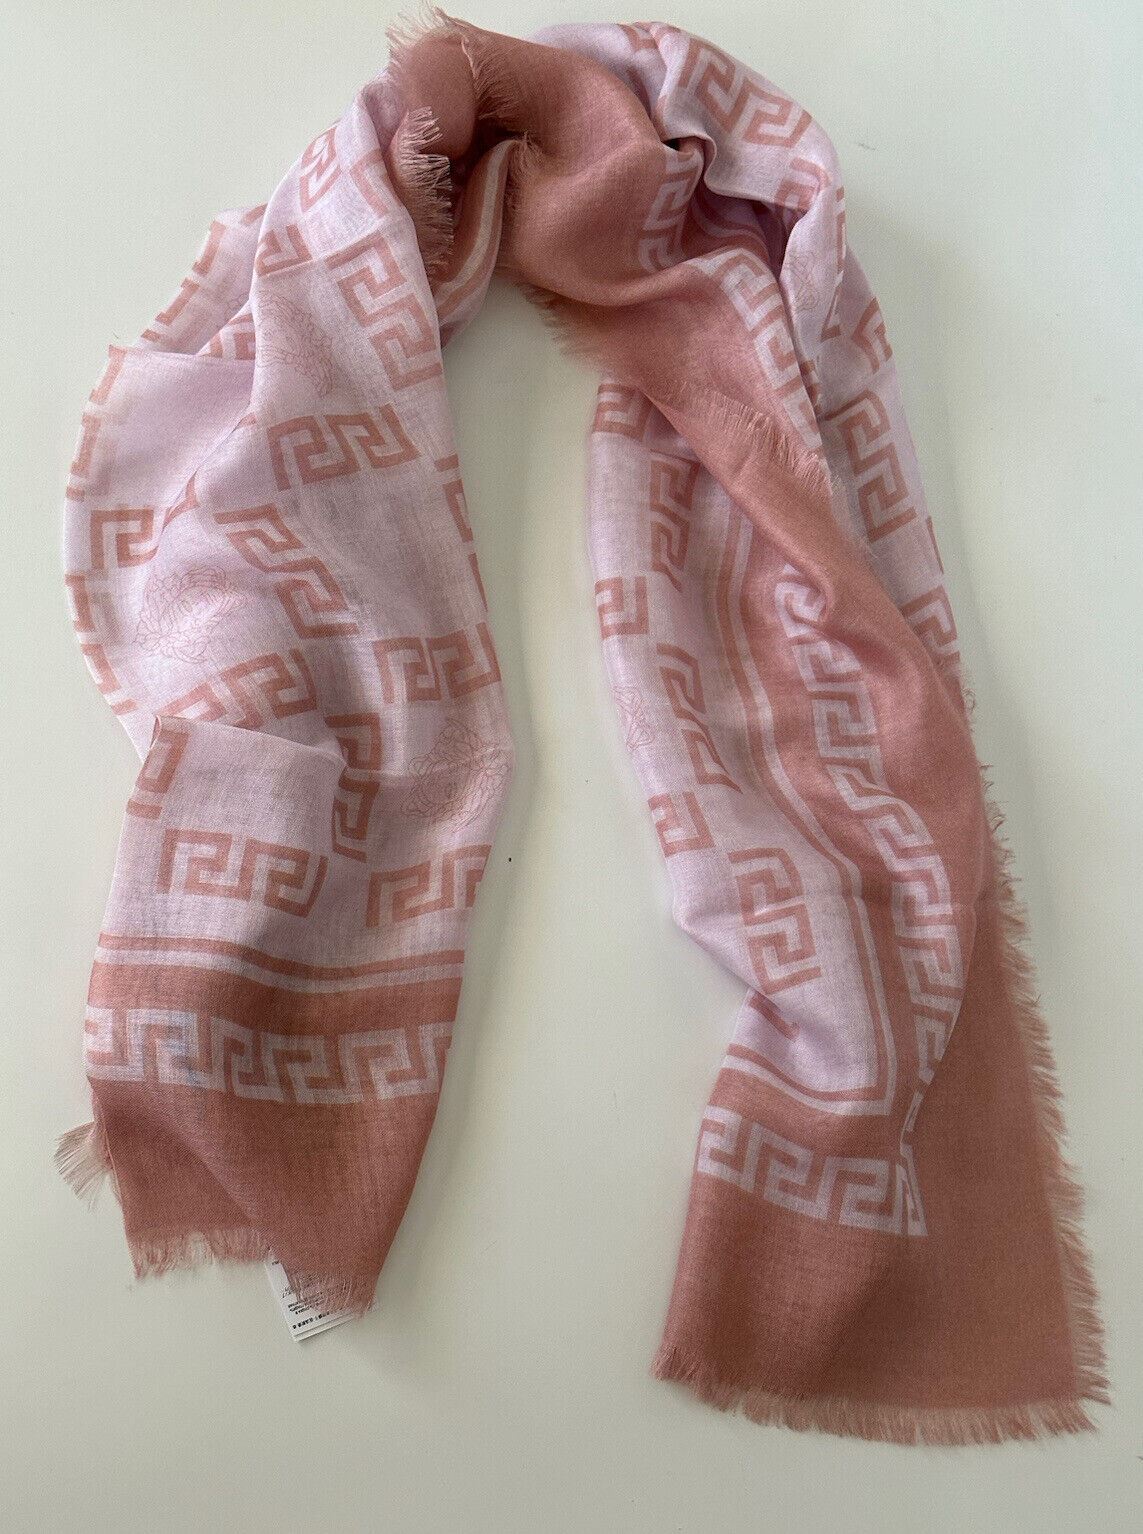 NWT $500 Versace Розовый шарф с принтом Medusa/греческий ключ 52Wx52L IF01401S Италия 